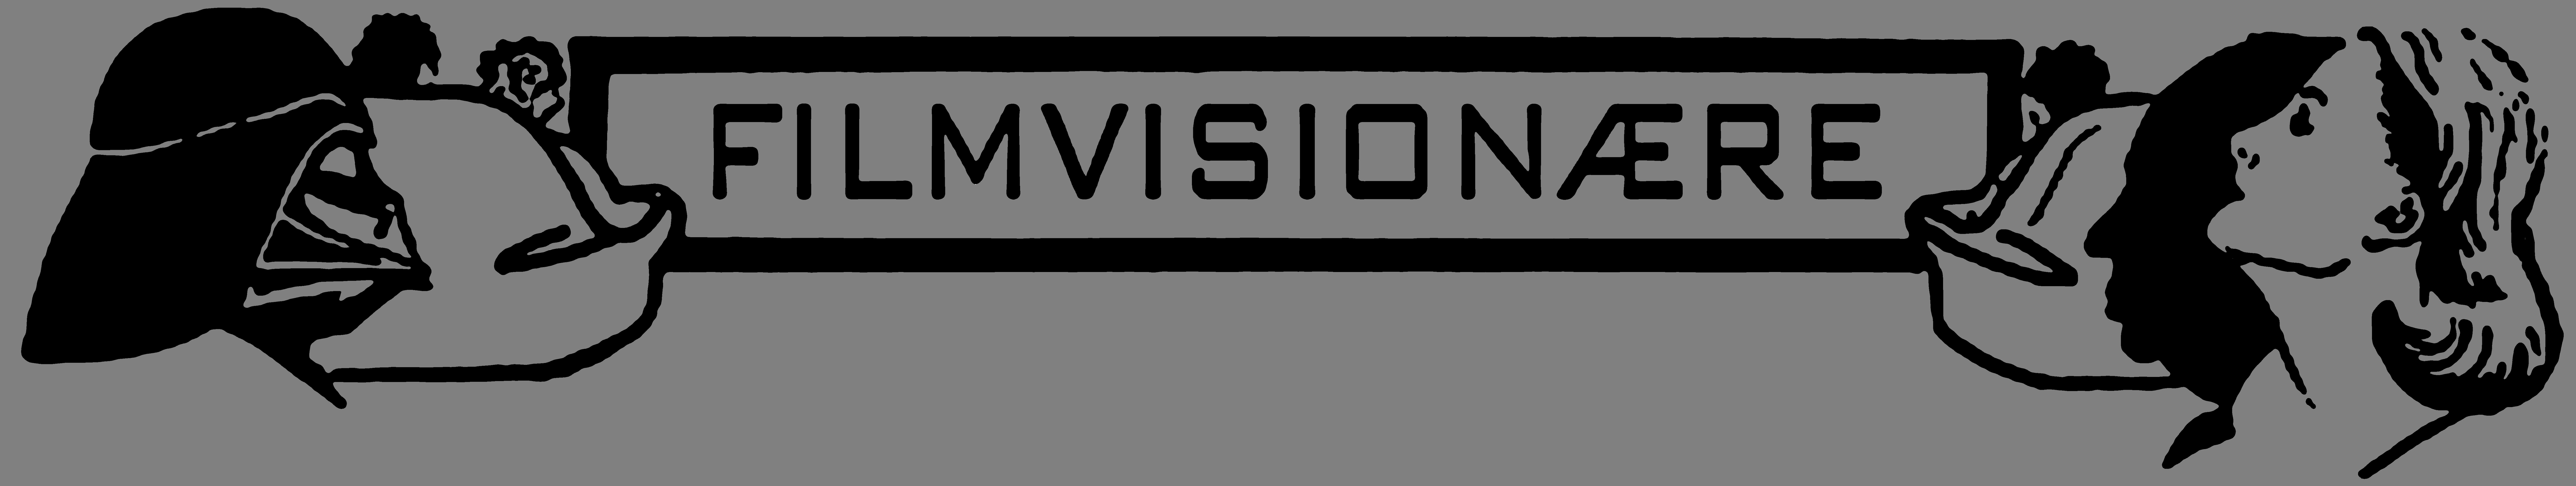 fv-logo-070522.png